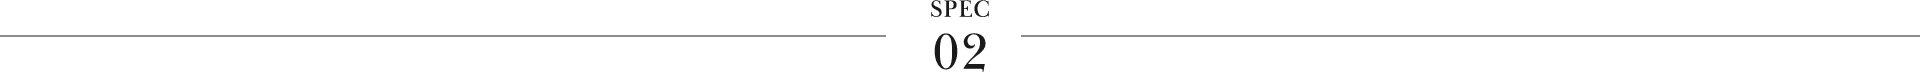 spec02